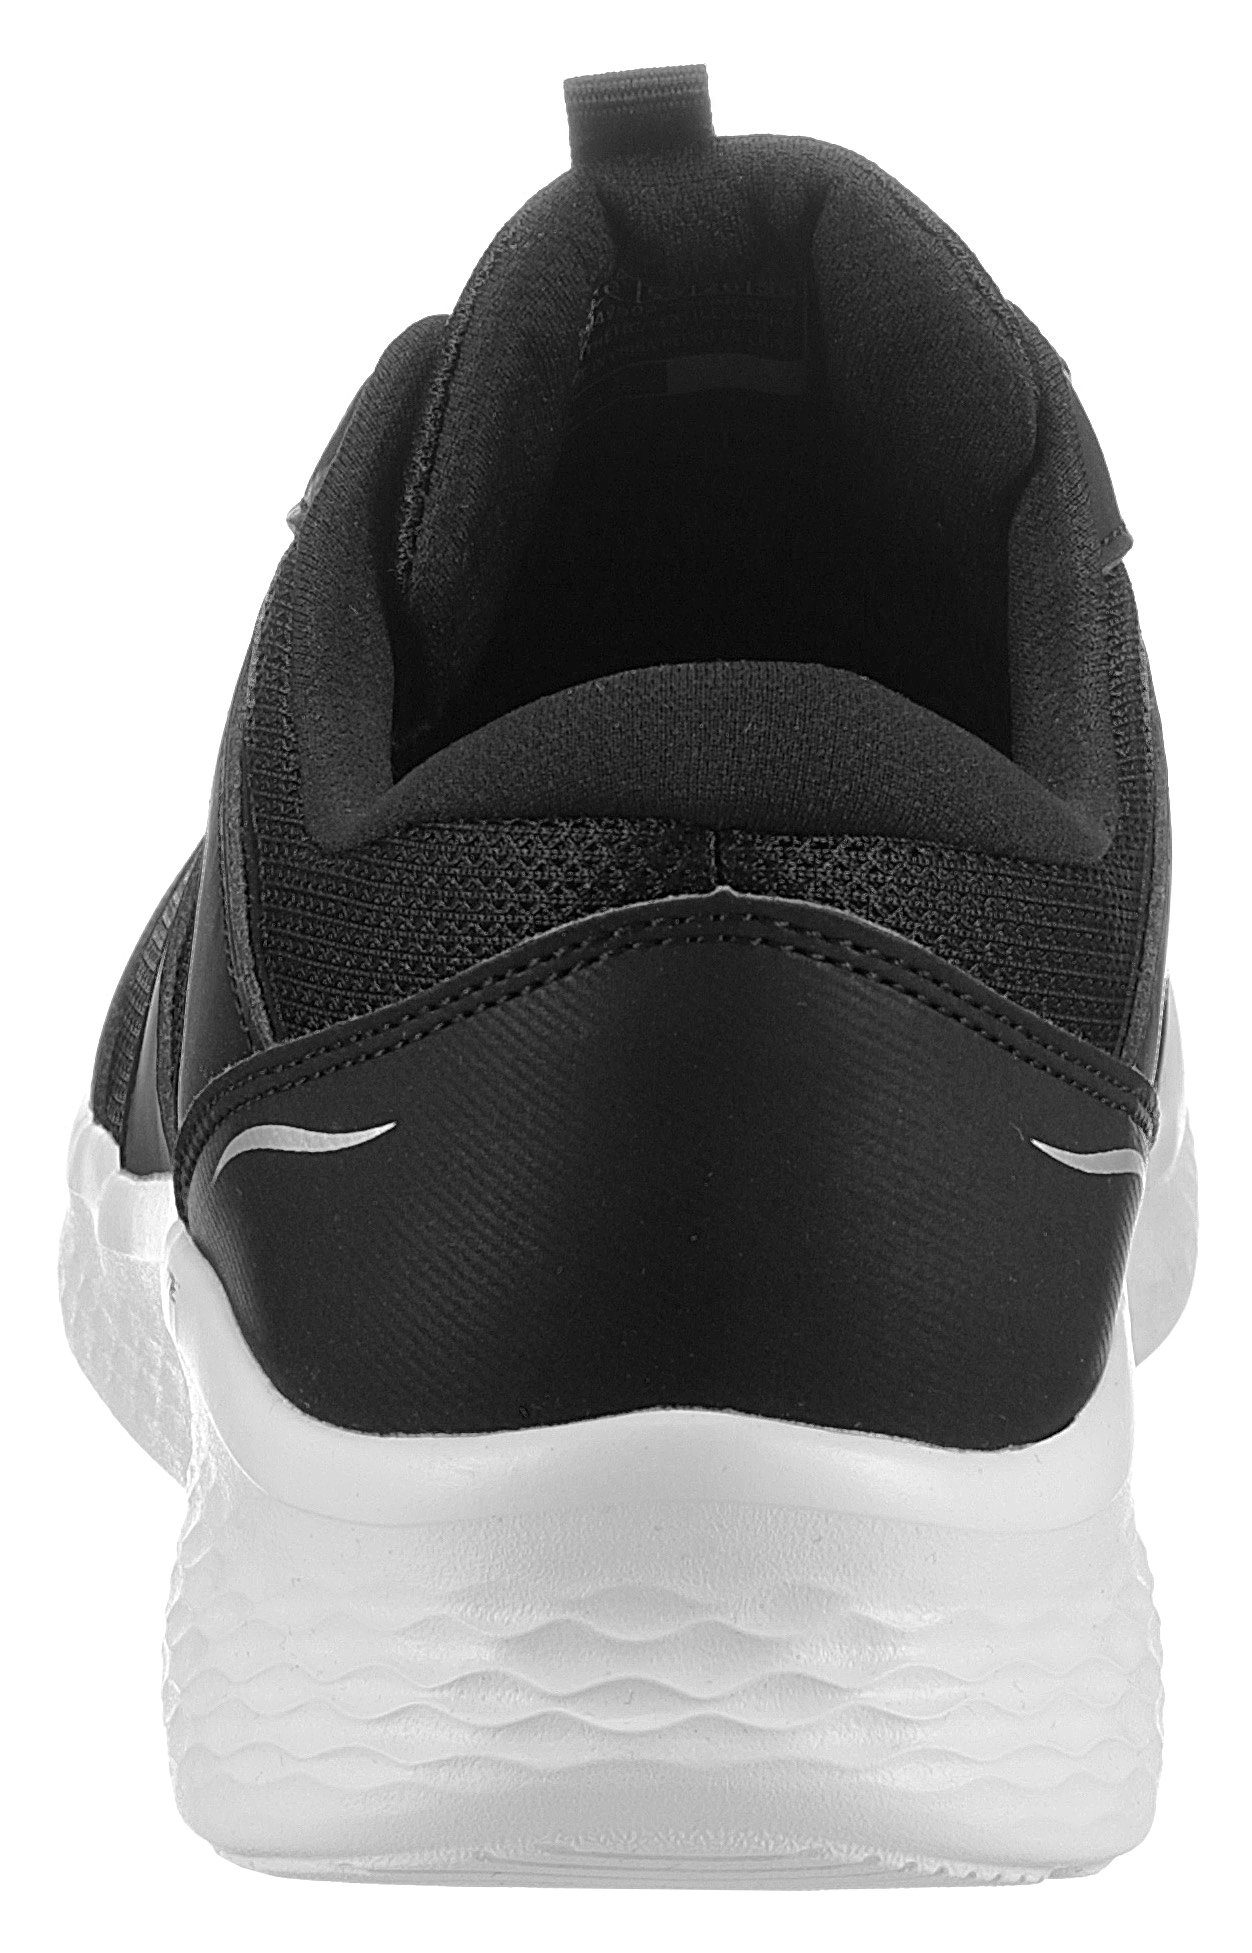 Skechers SKECH-LITE PRO - Sneaker Cooled Memory Air Foam-Ausstattung mit schwarz-weiß